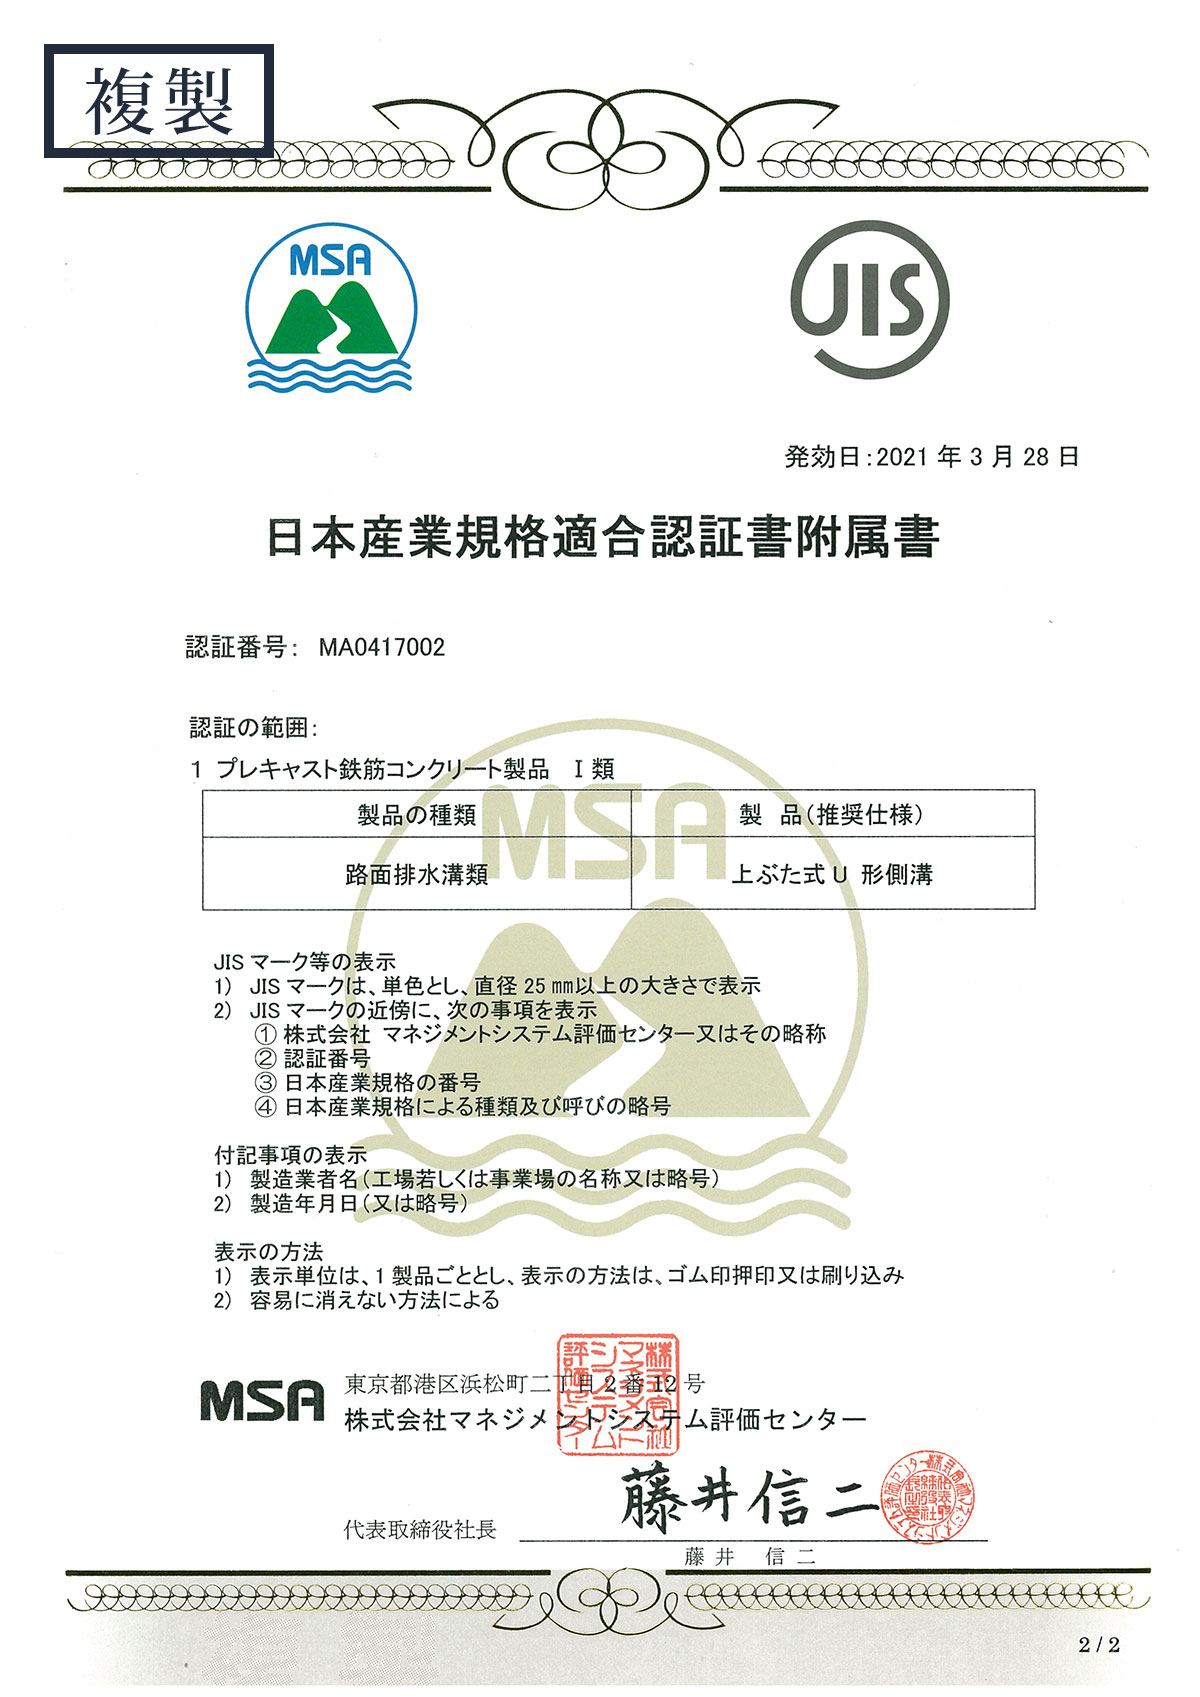 日本産業規格適合認証書附属書（JIS）